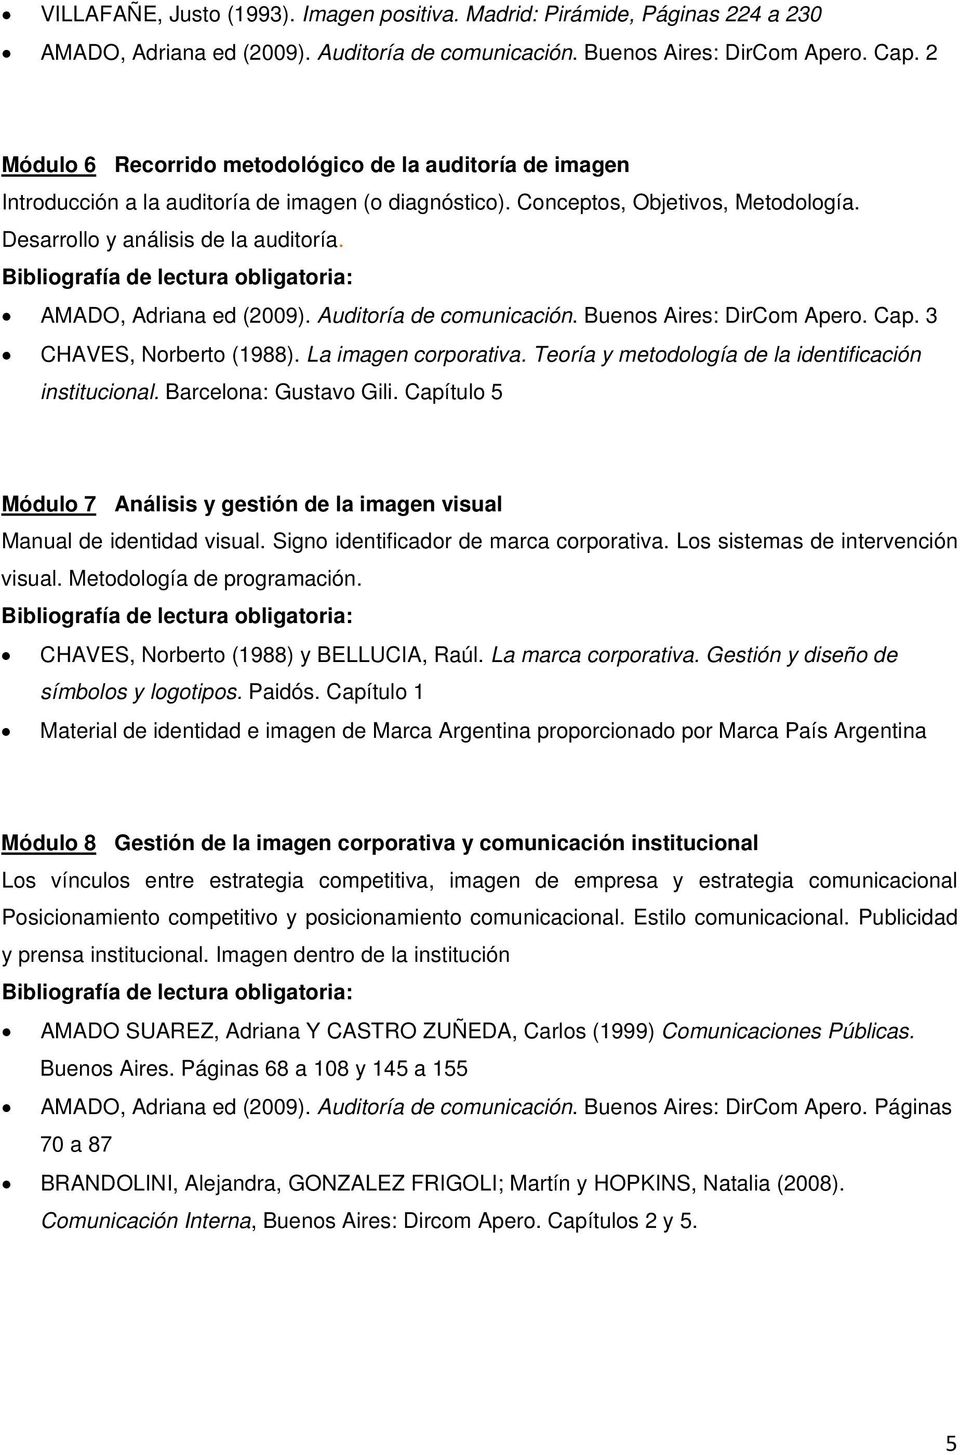 AMADO, Adriana ed (2009). Auditoría de comunicación. Buenos Aires: DirCom Apero. Cap. 3 CHAVES, Norberto (1988). La imagen corporativa. Teoría y metodología de la identificación institucional.